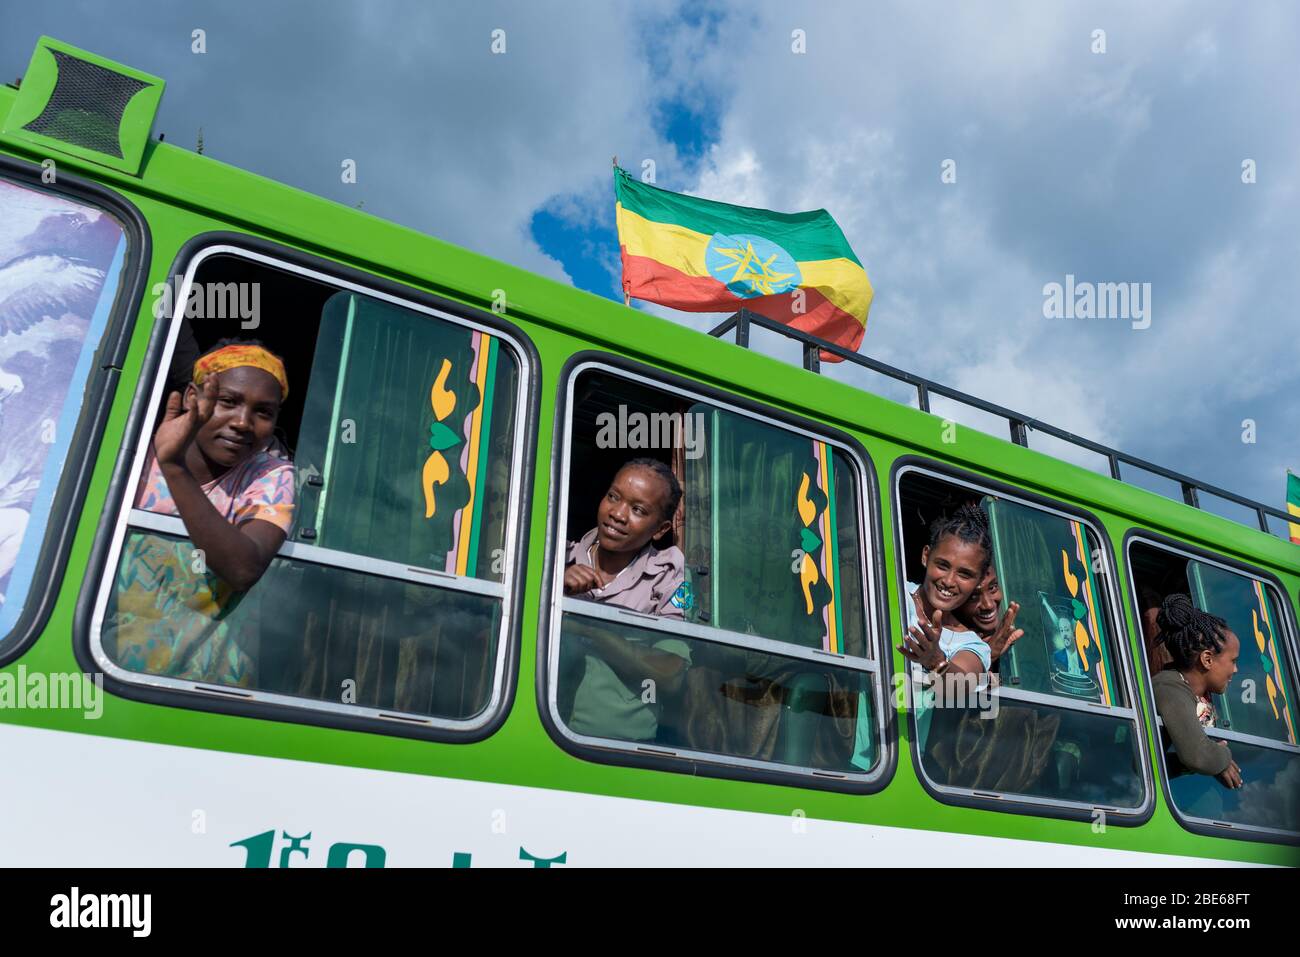 Gli studenti delle scuole si ondano e si rallegrano dalle finestre degli autobus mentre la processione degli studenti arriva a Jenka per iniziare il nuovo mandato scolastico, Jenka, Etiopia, Africa. Foto Stock